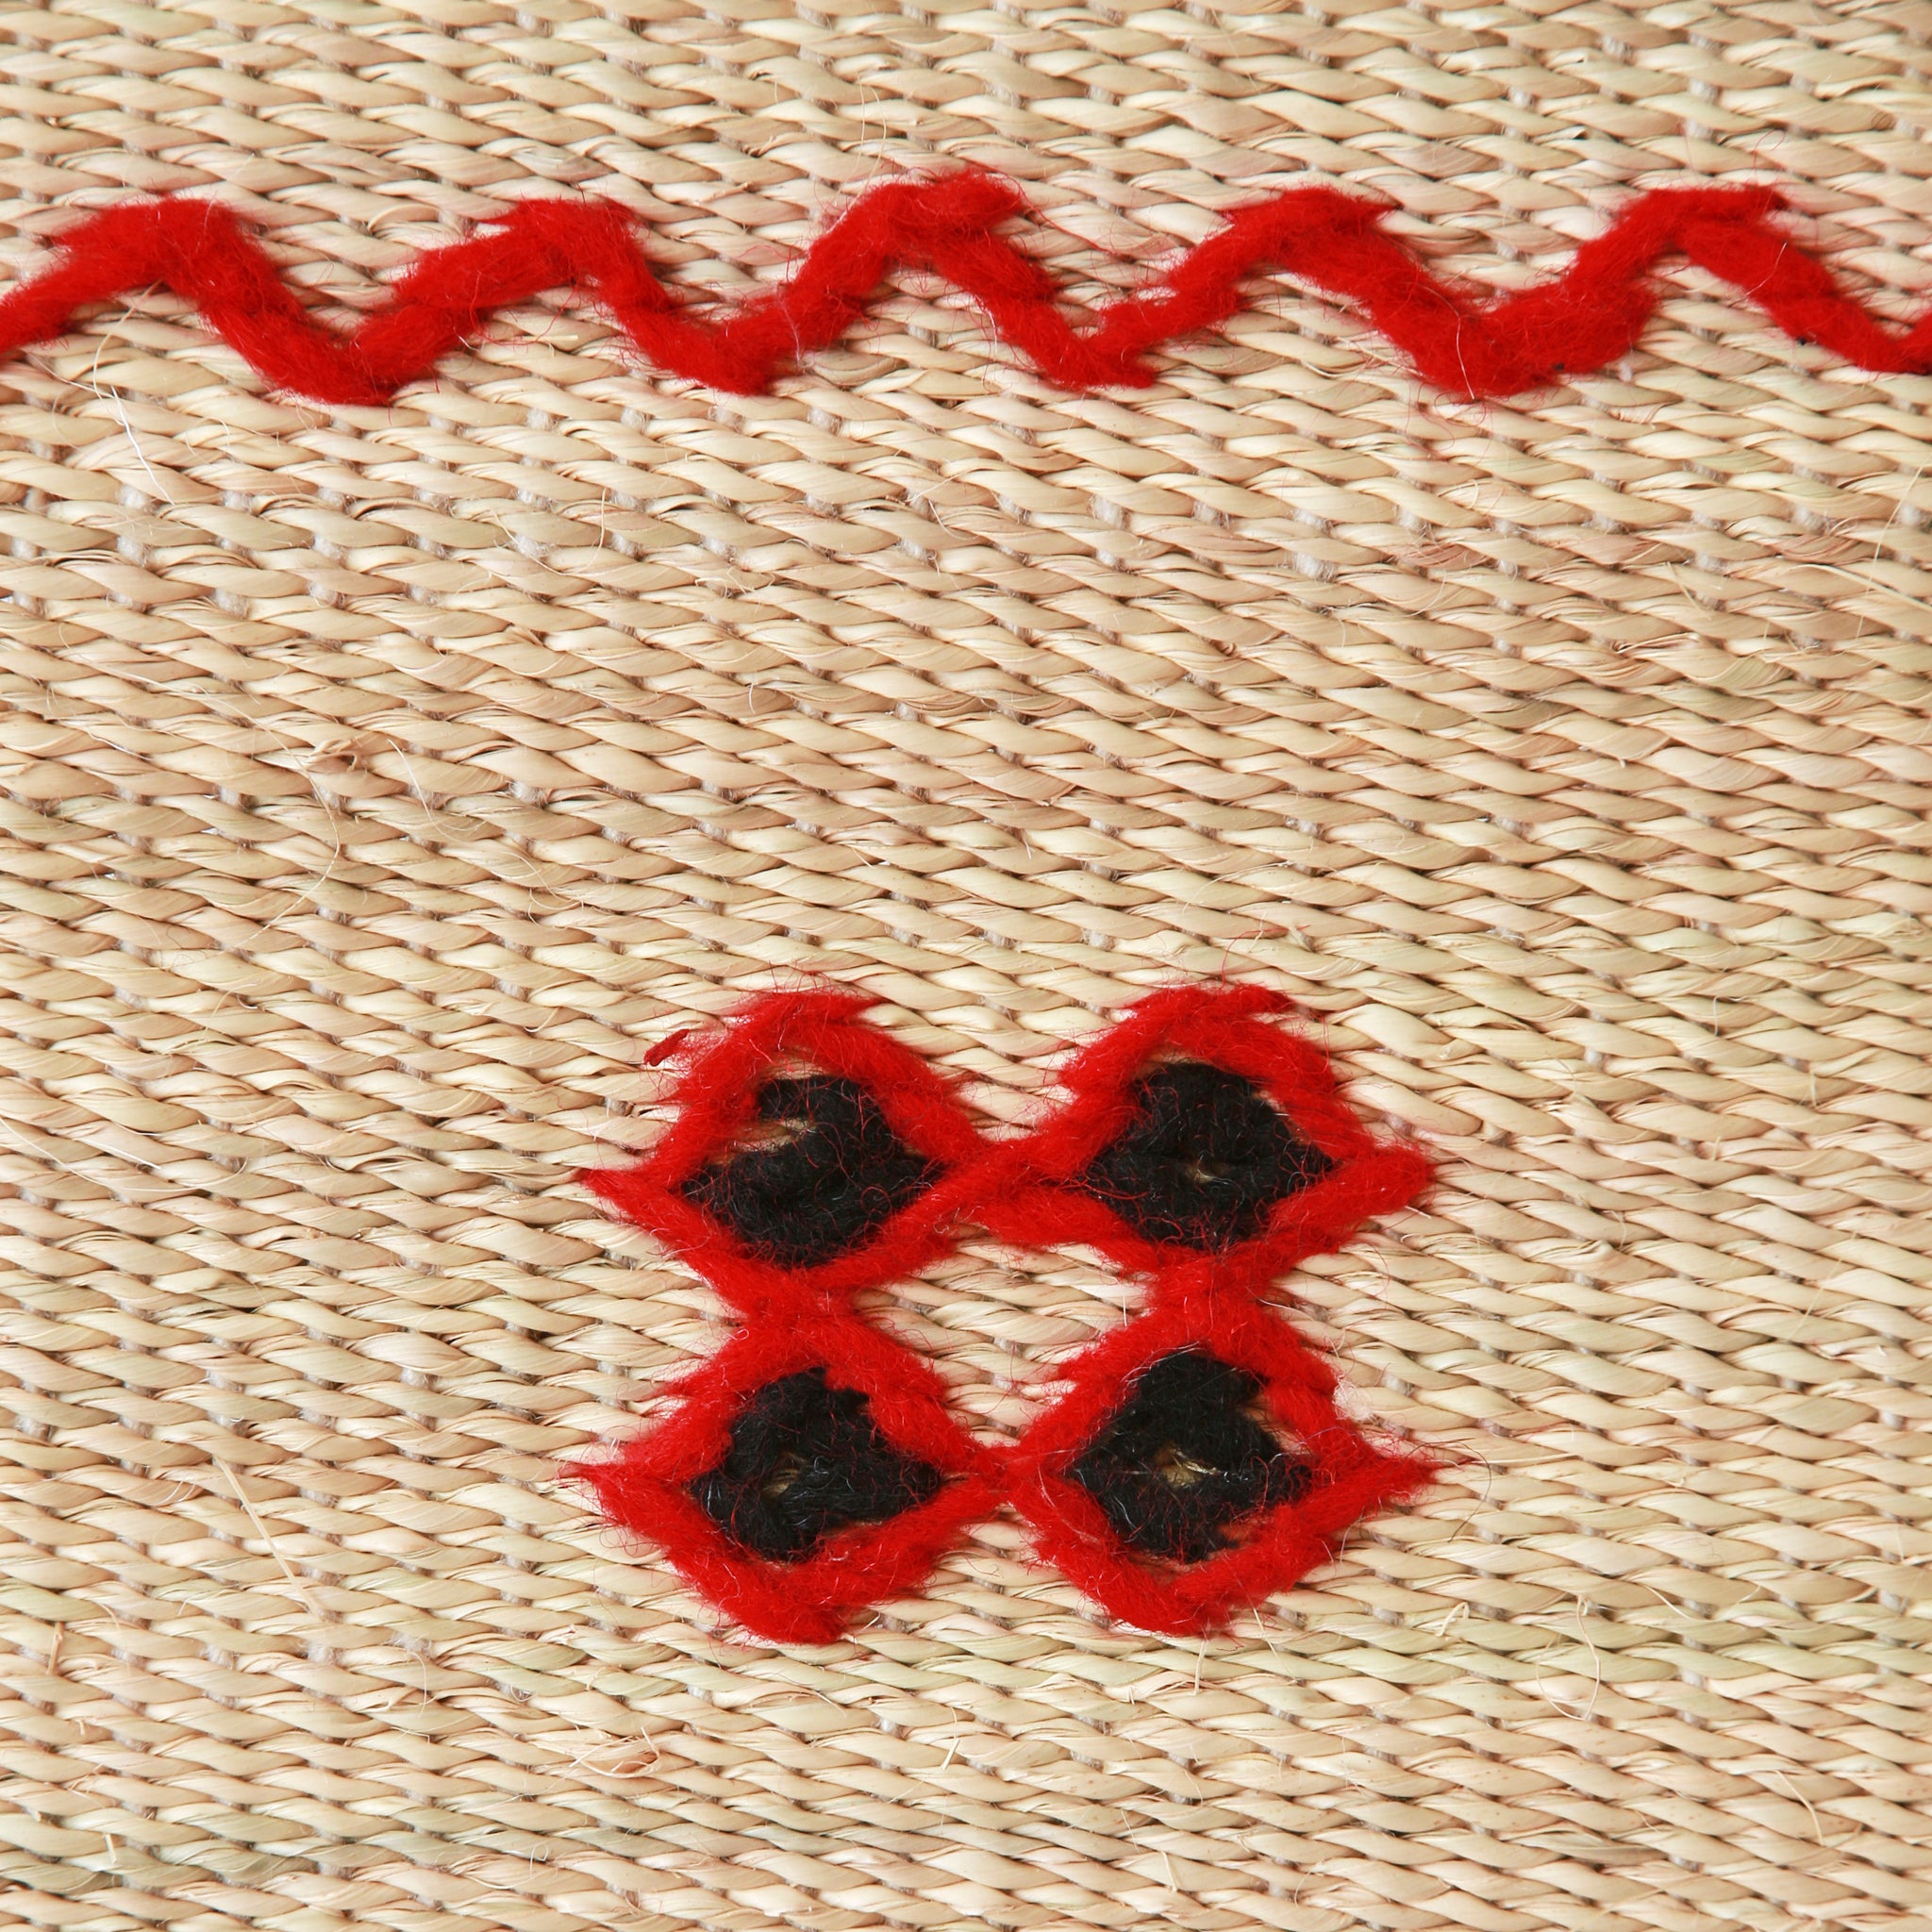 dettaglio del ricamo di una stuoia hassira intrecciata a mano con paglia di palma e ricamata con con lana rossa e nera.